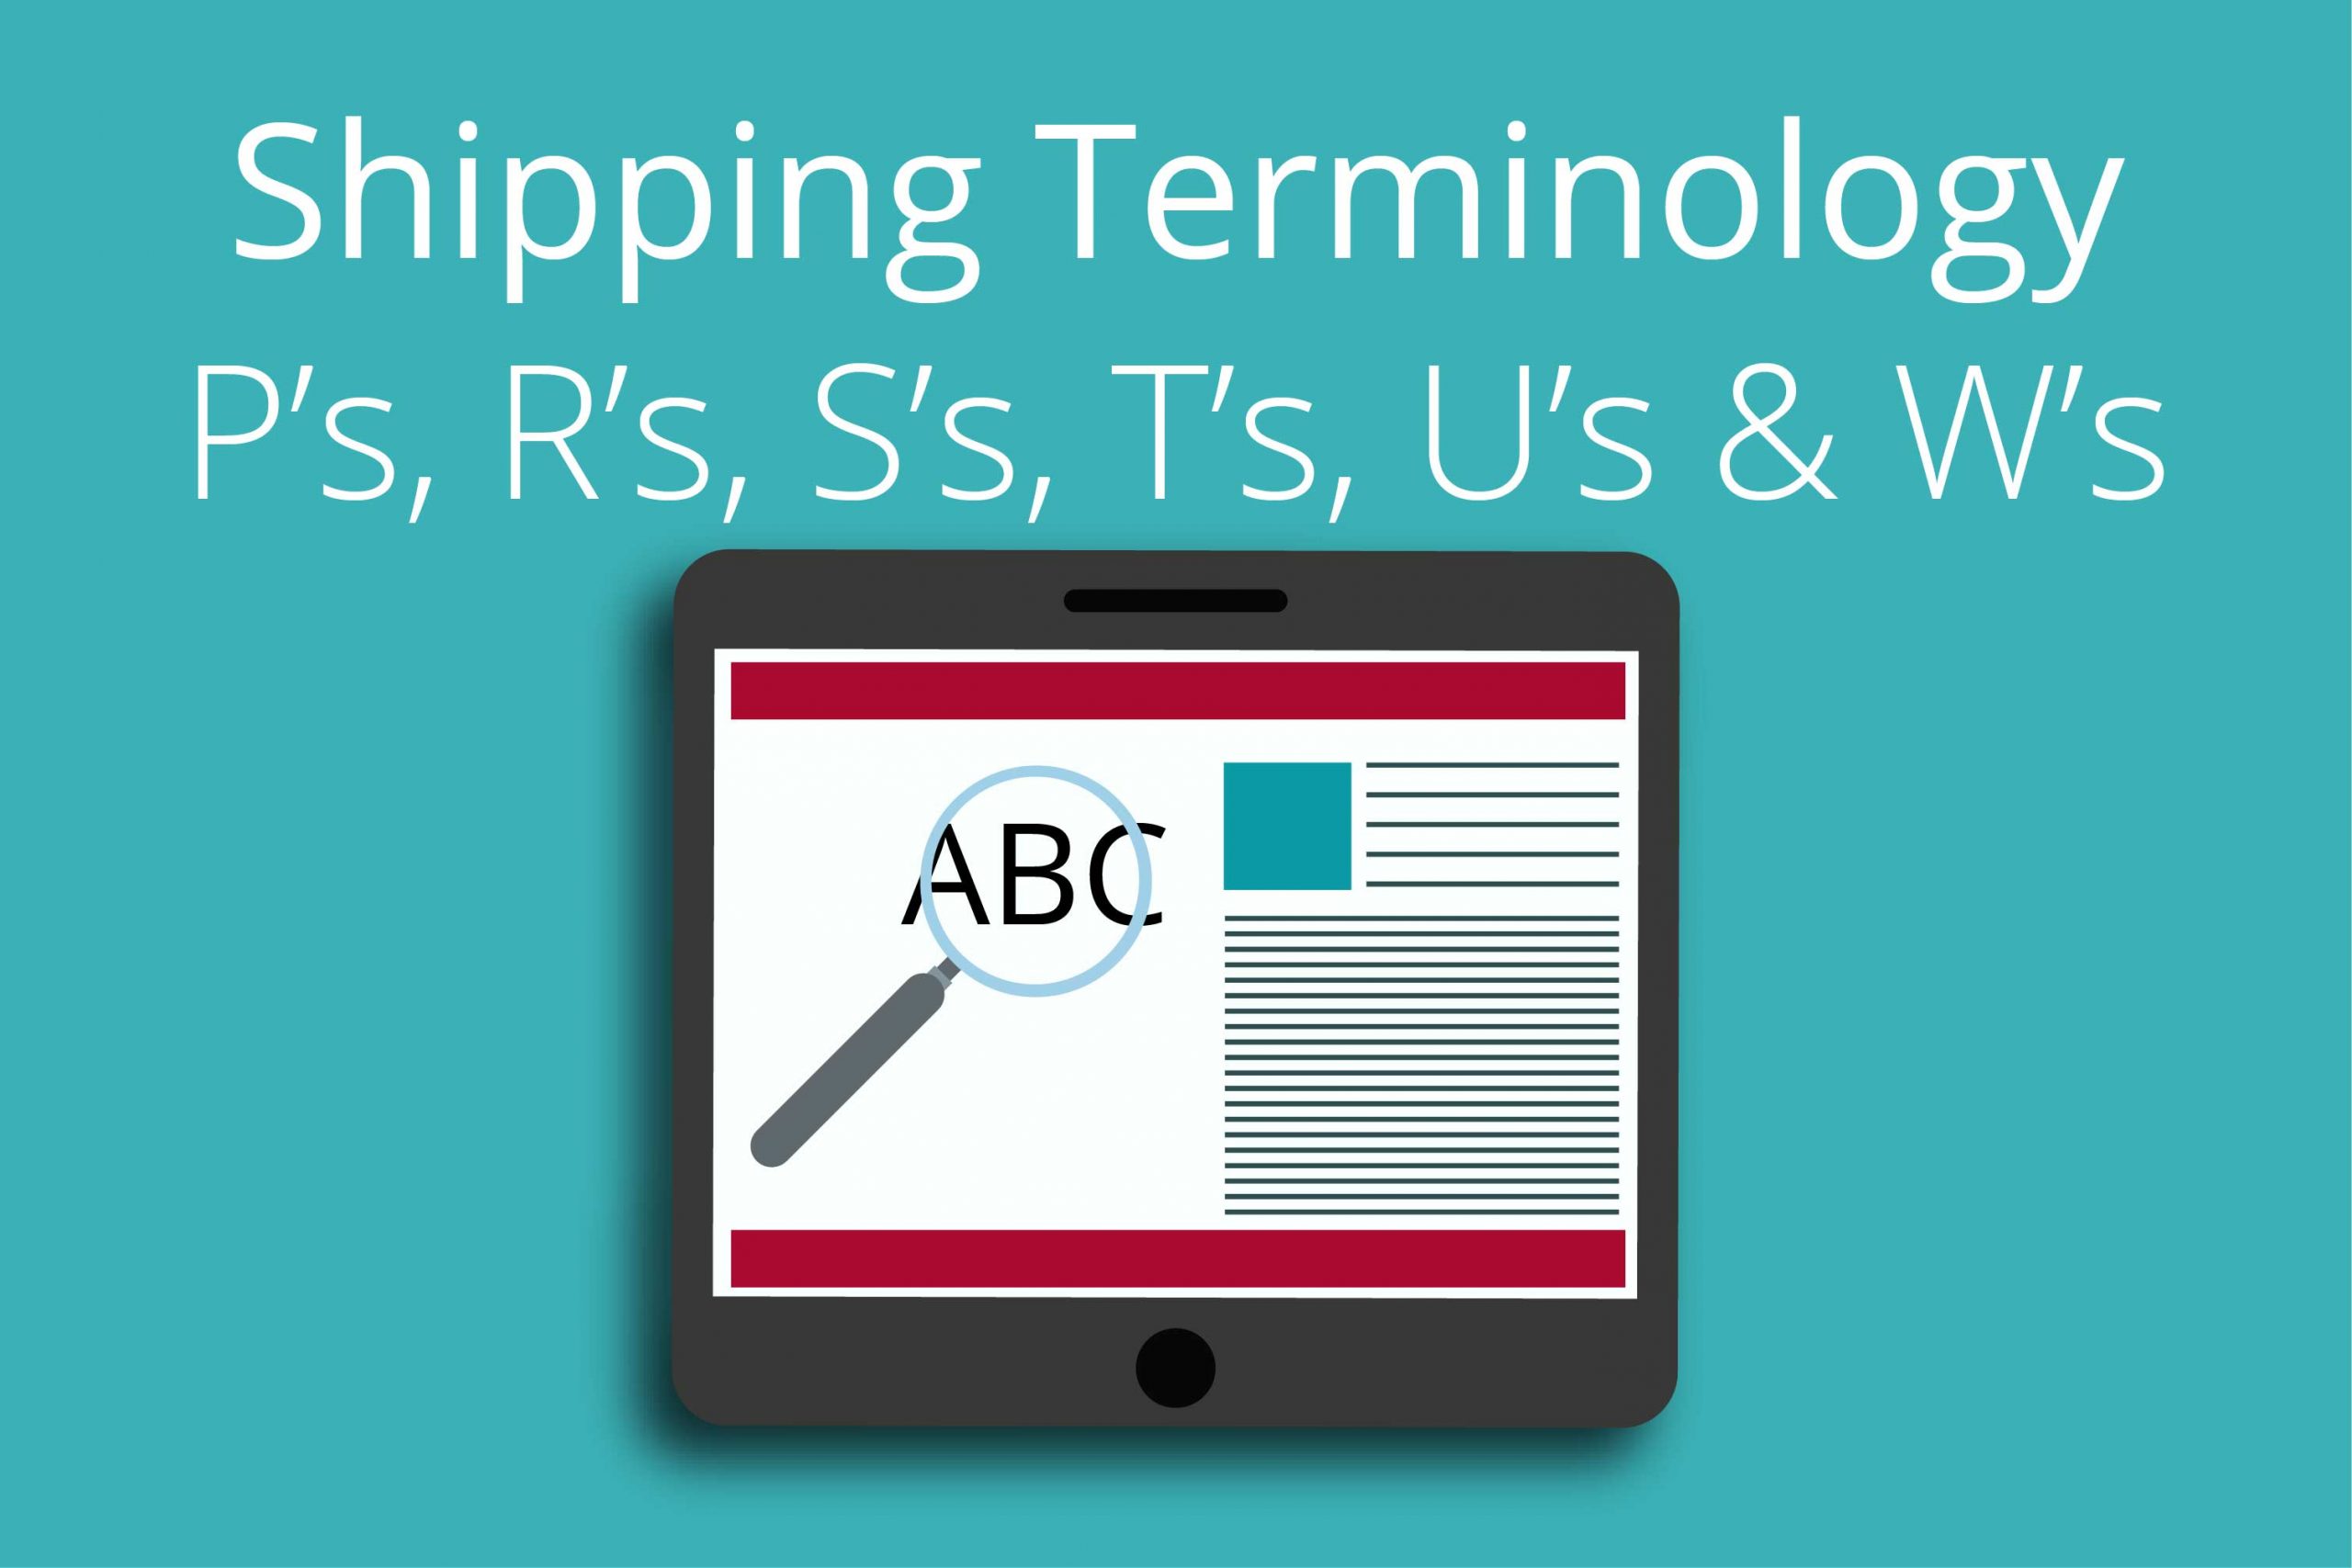 Shipping Terminology (P's R's S's T's U's & W's)